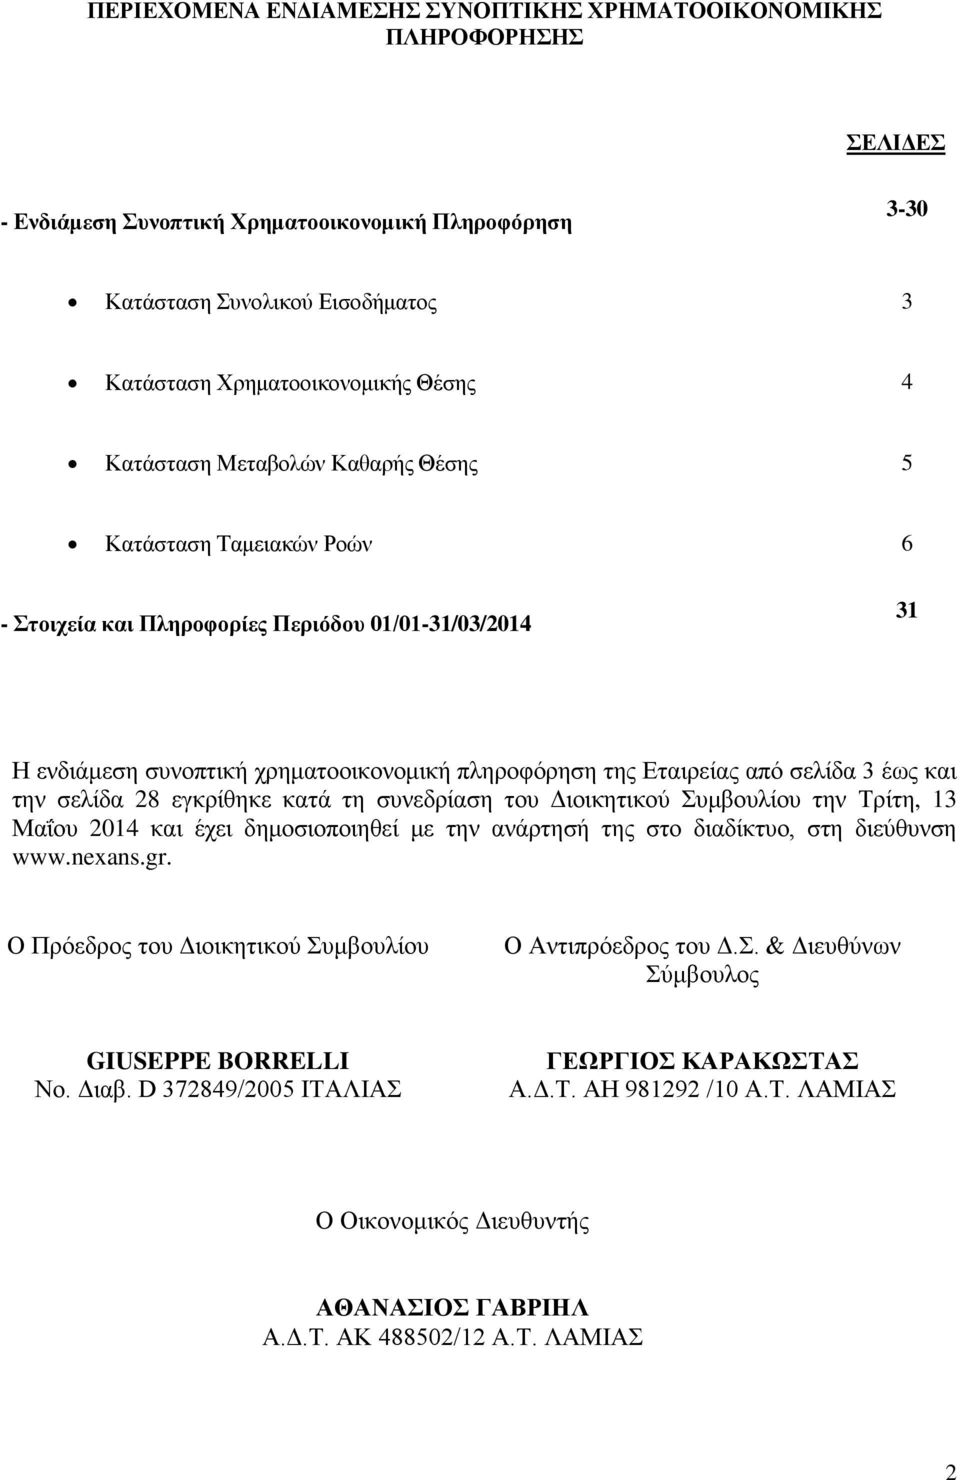 έως και την σελίδα 28 εγκρίθηκε κατά τη συνεδρίαση του Διοικητικού Συμβουλίου την Τρίτη, 13 Μαΐου 2014 και έχει δημοσιοποιηθεί με την ανάρτησή της στο διαδίκτυο, στη διεύθυνση www.nexans.gr.